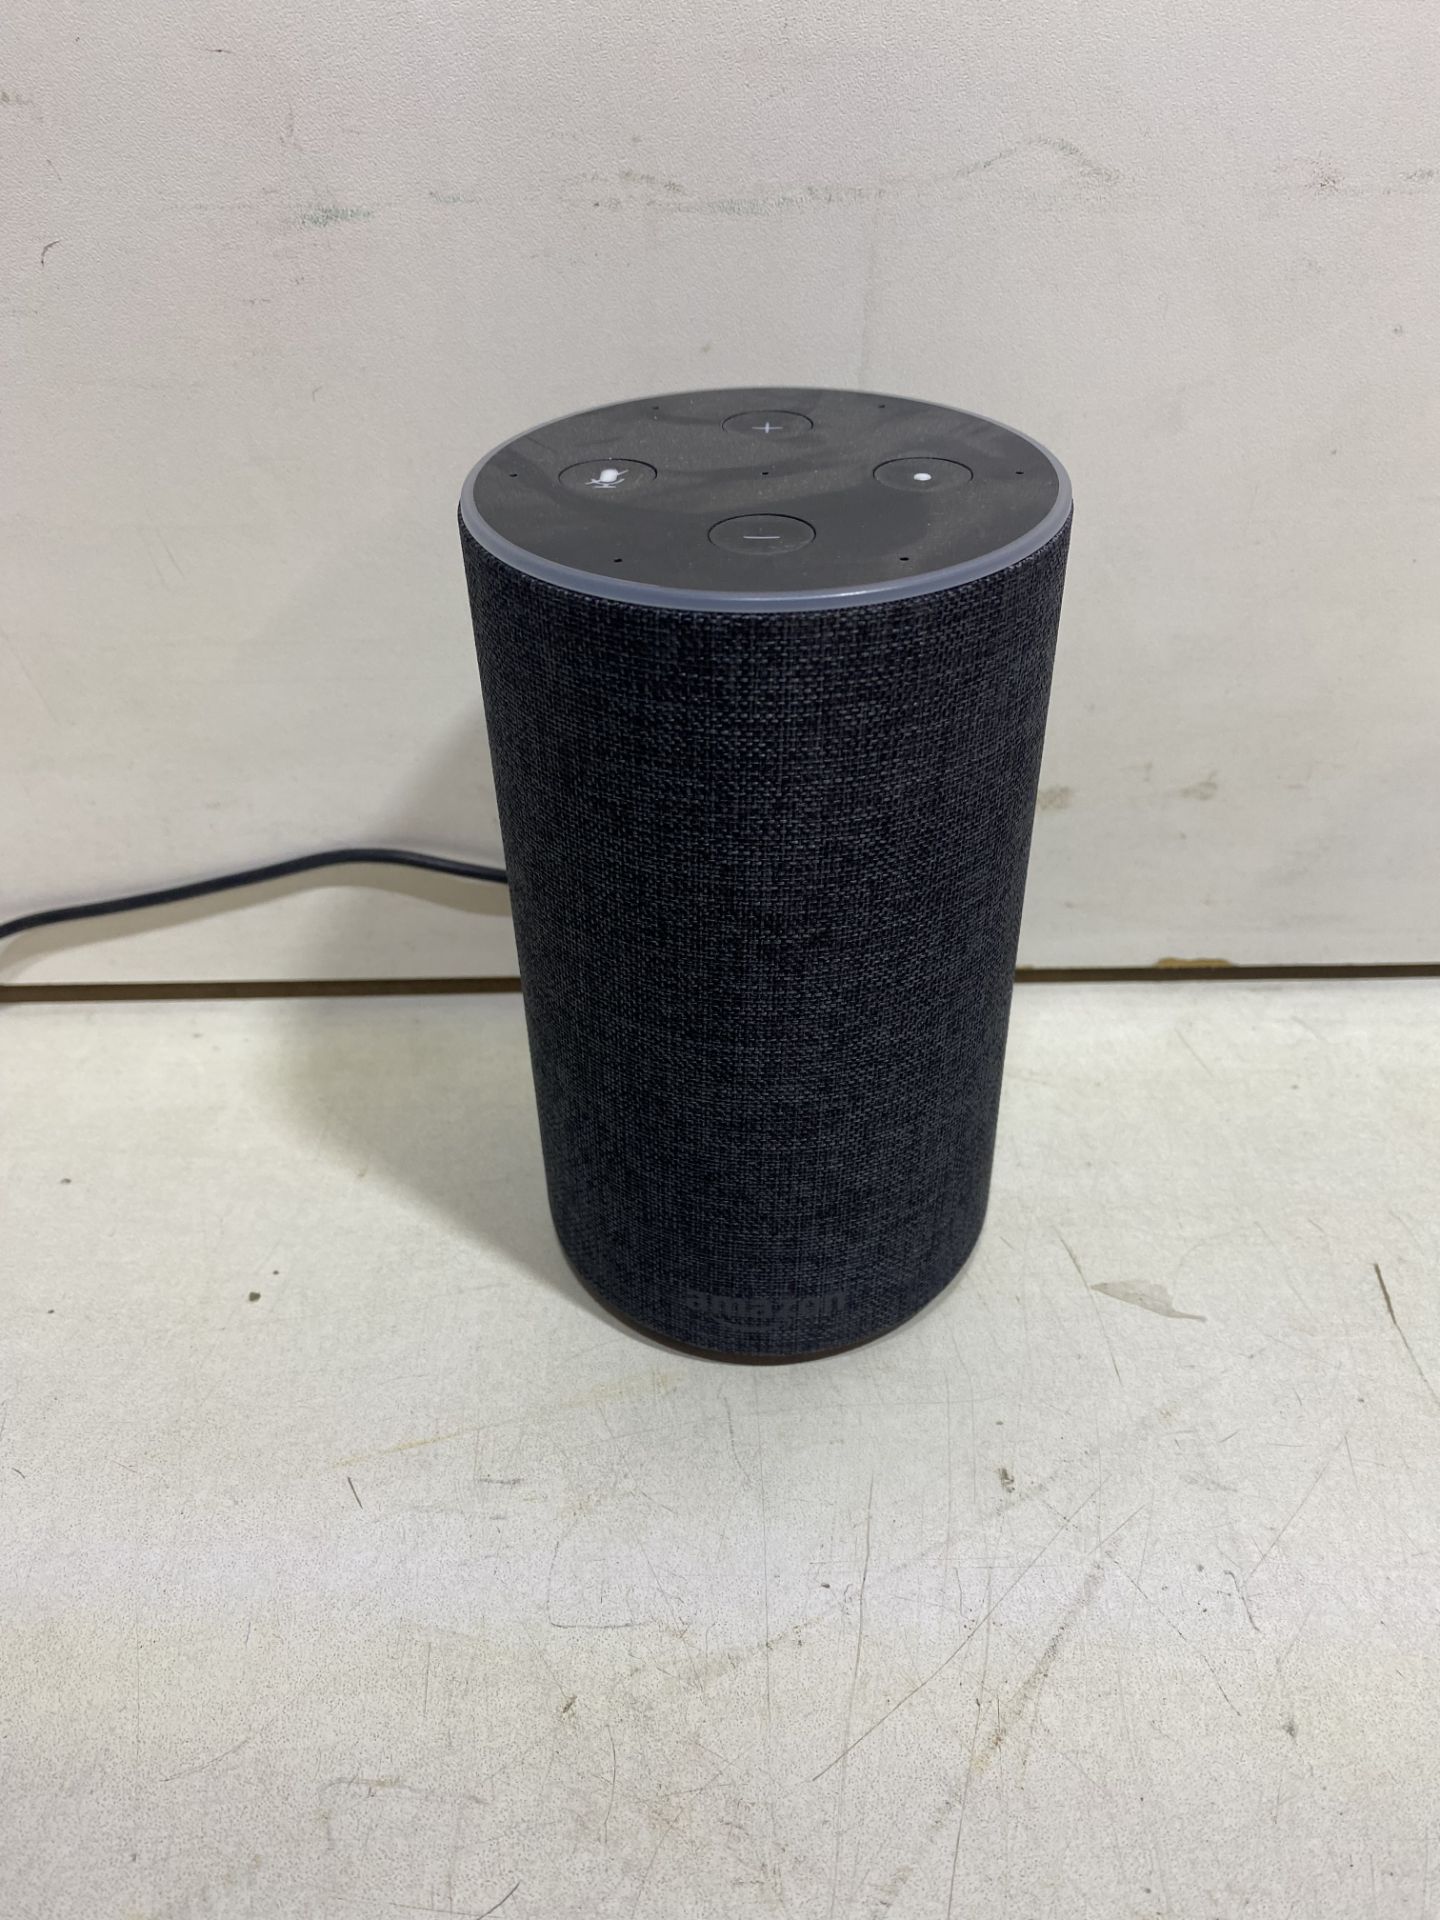 Amazon Echo Smart Speaker With Alexa - Image 2 of 6